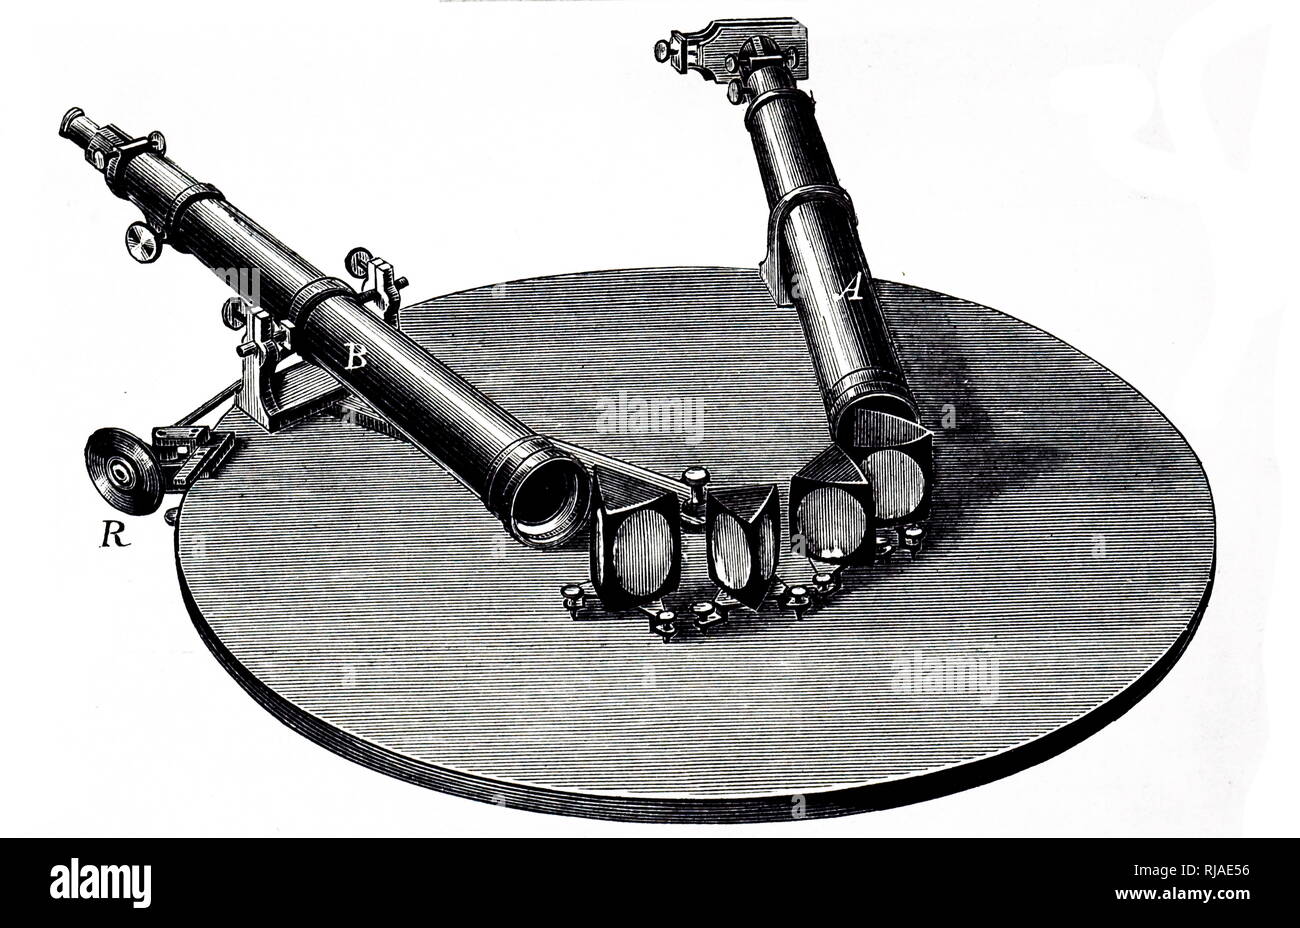 19 Abbildung mit einem Spektroskop verwendet von Gustav Robert Kirchhoff (1824-1887), deutscher Physiker, die das grundlegende Verständnis der elektrischen Schaltkreise, Spektroskopie beigetragen und die Emission von schwarzen Körper Strahlung, die von beheizten Objekte. Stockfoto